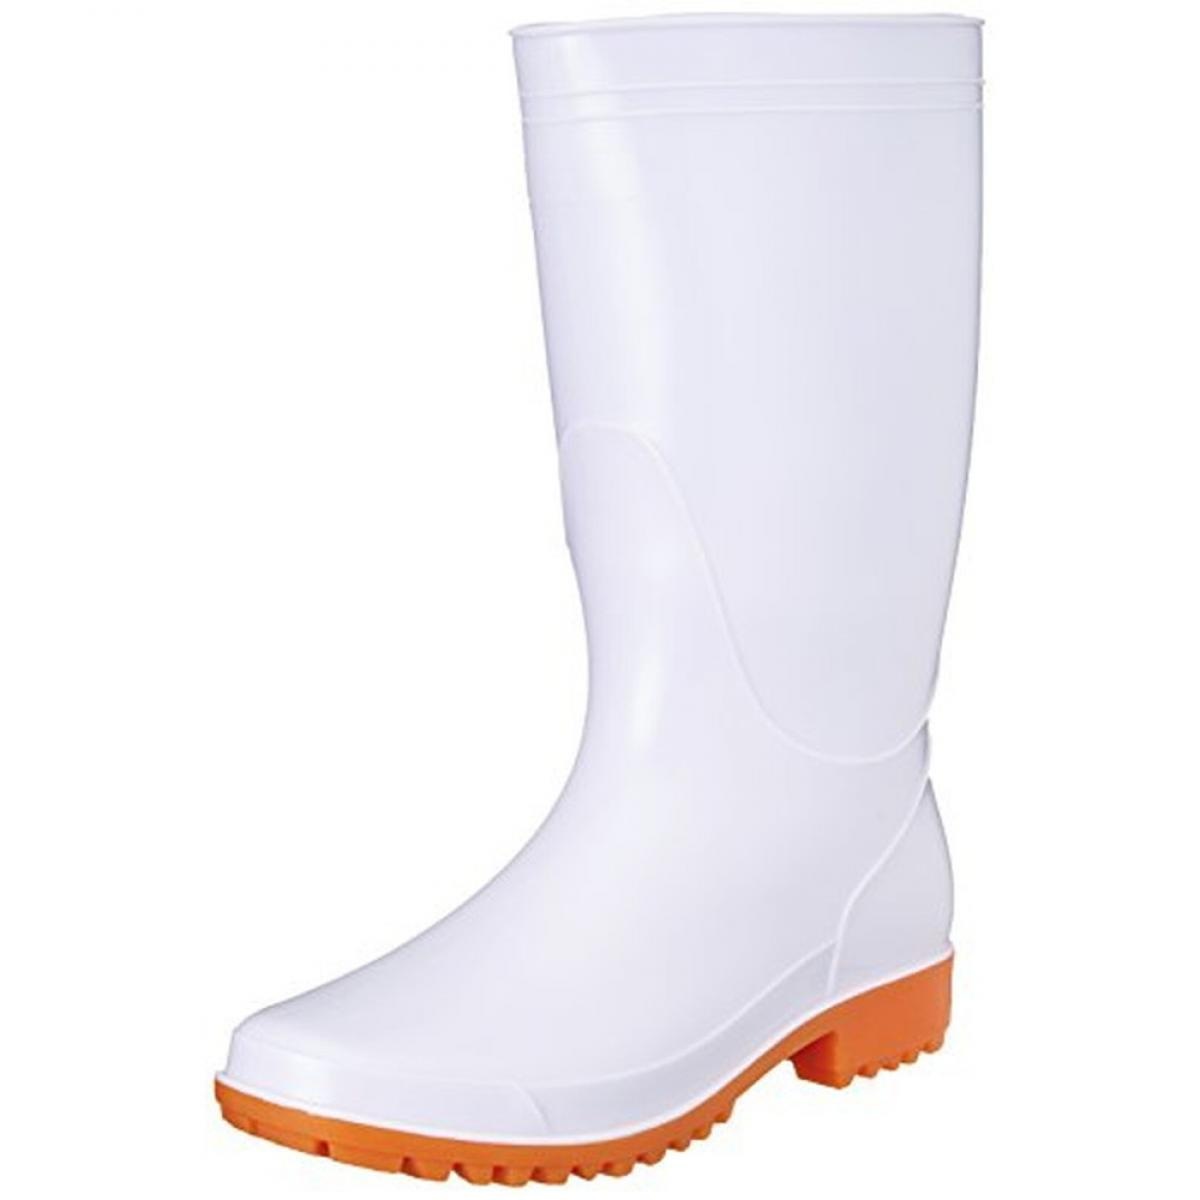 キタ 作業靴 長靴 衛生長 PVC 耐油底仕様(抗菌/防臭加工) KR-7410 ホワイト(ホワイト